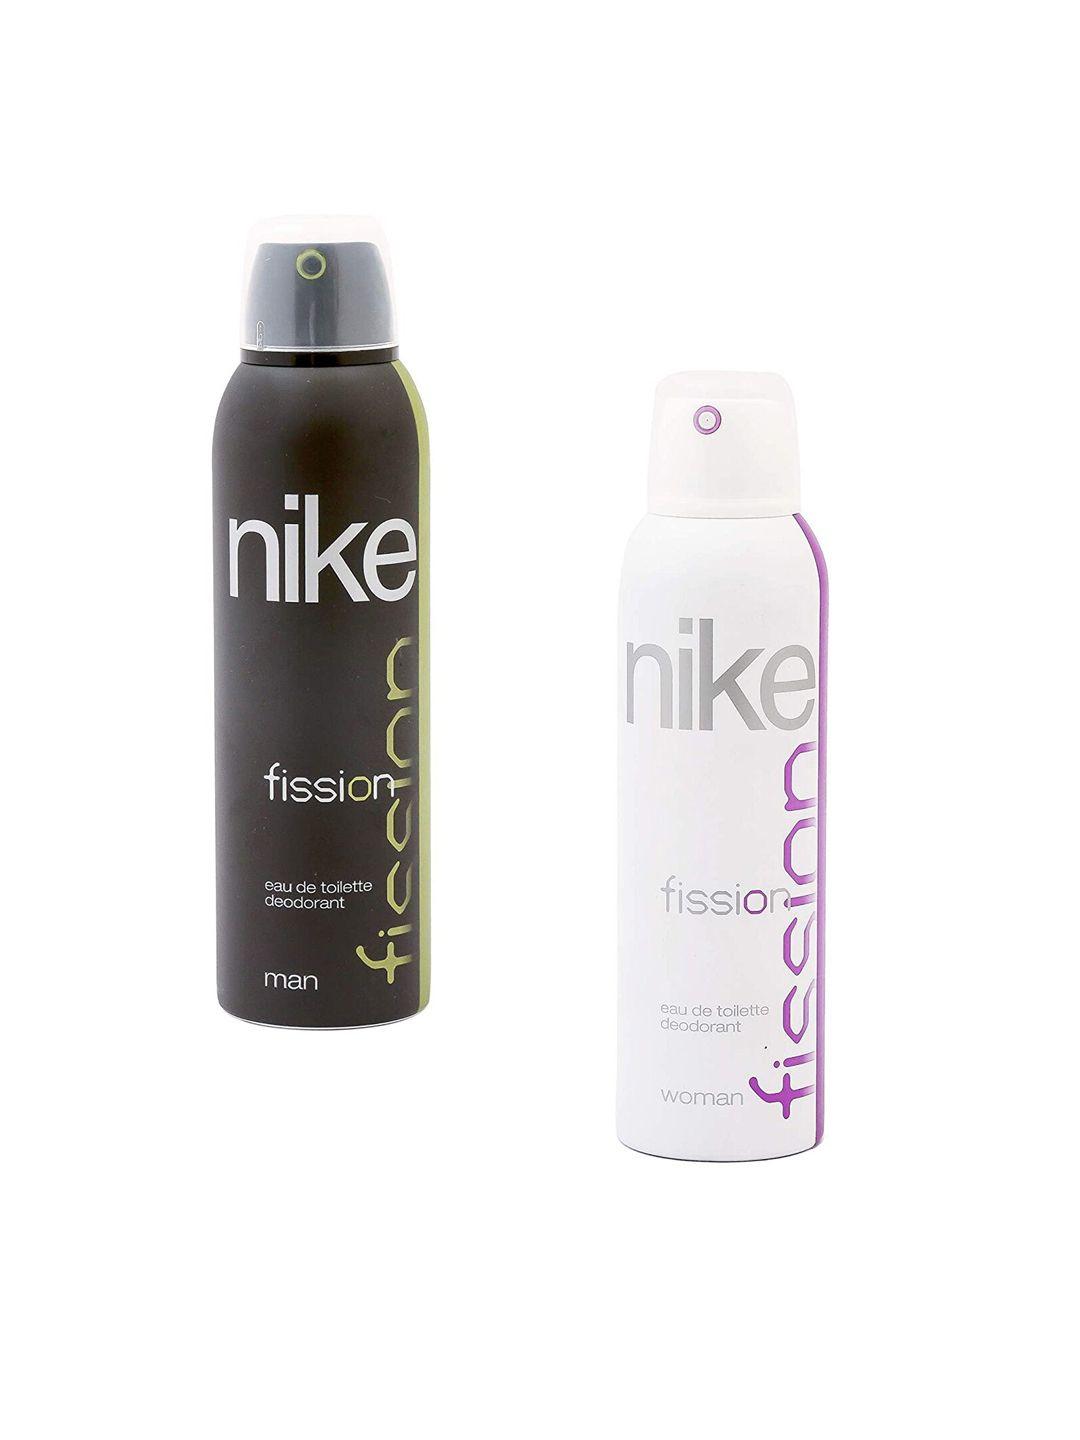 nike set of 2 fission eau de toilette deodorant - 200ml each